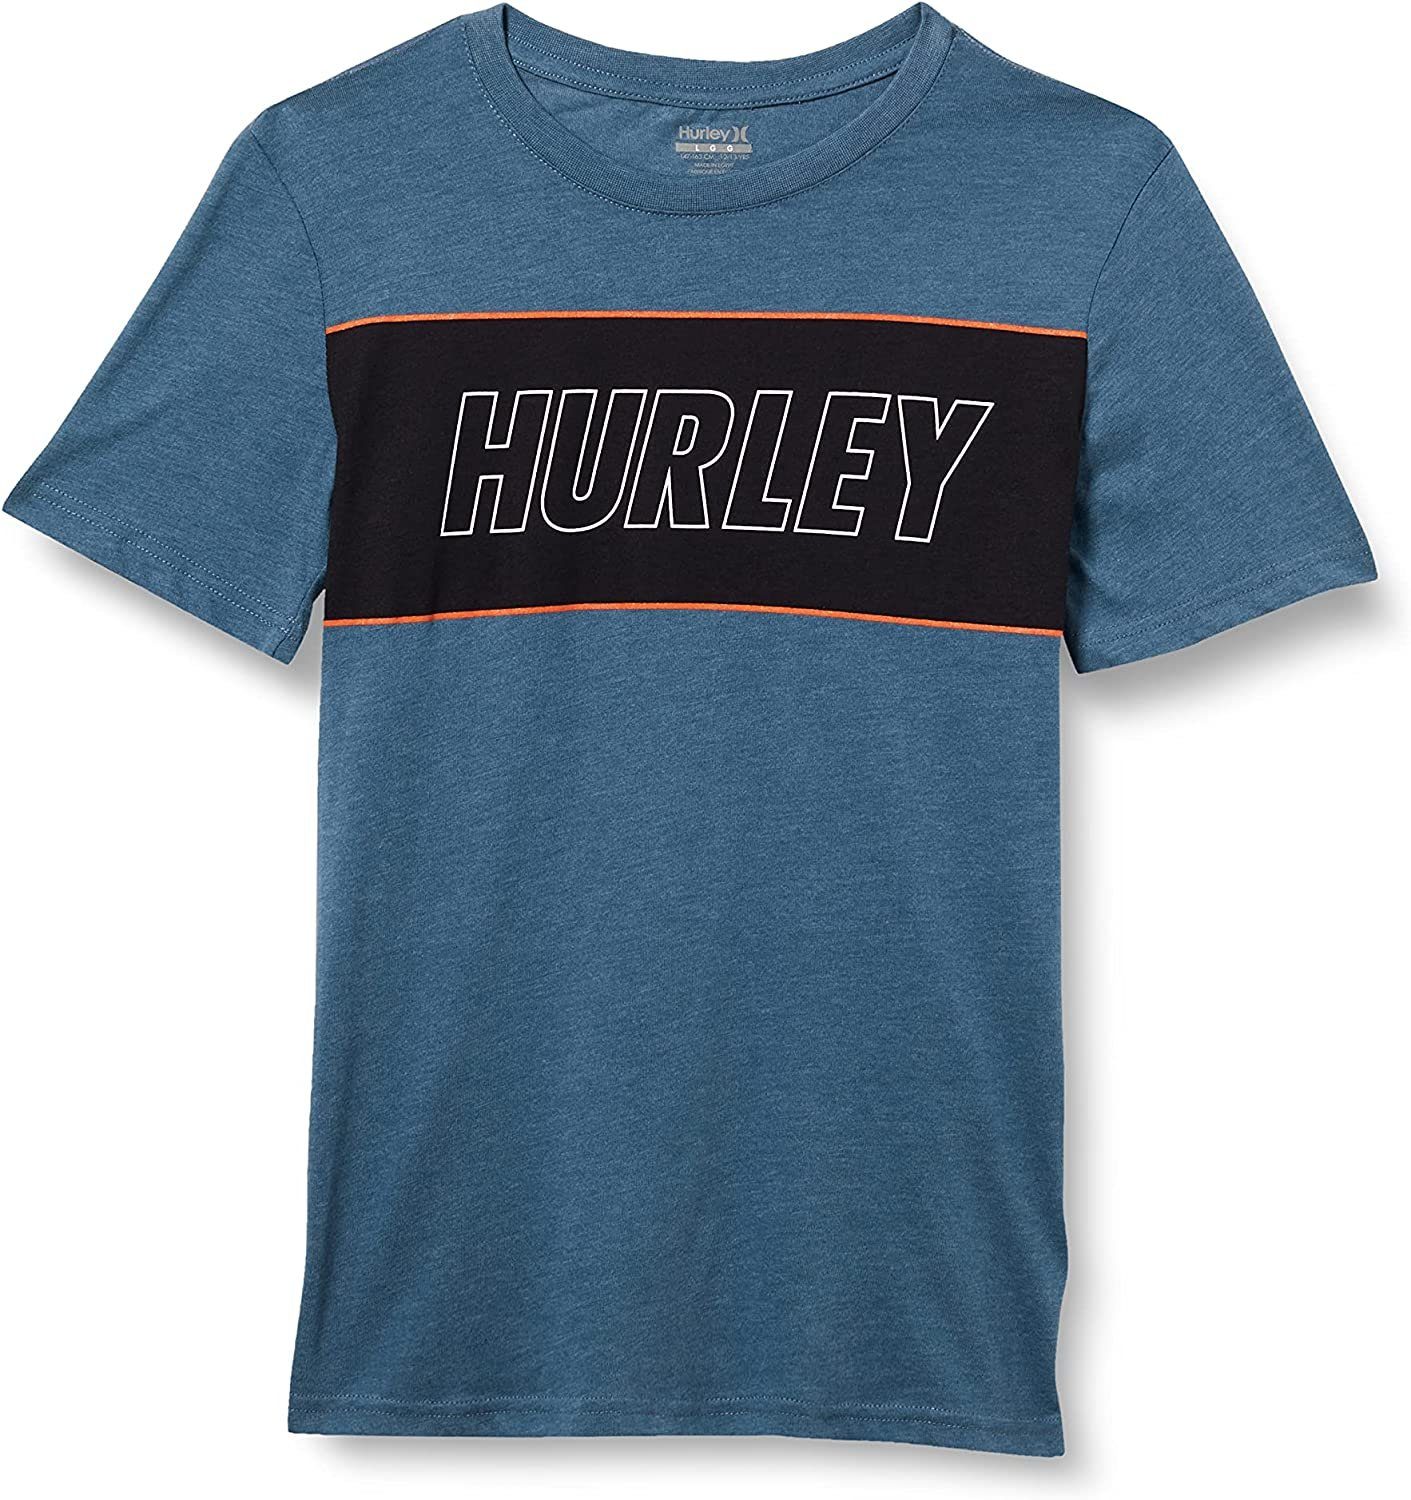 Hurley Print-Shirt Hrlb Fastlane Tee weichen Material für langanhaltenden Komfort, Gr. S 128-132